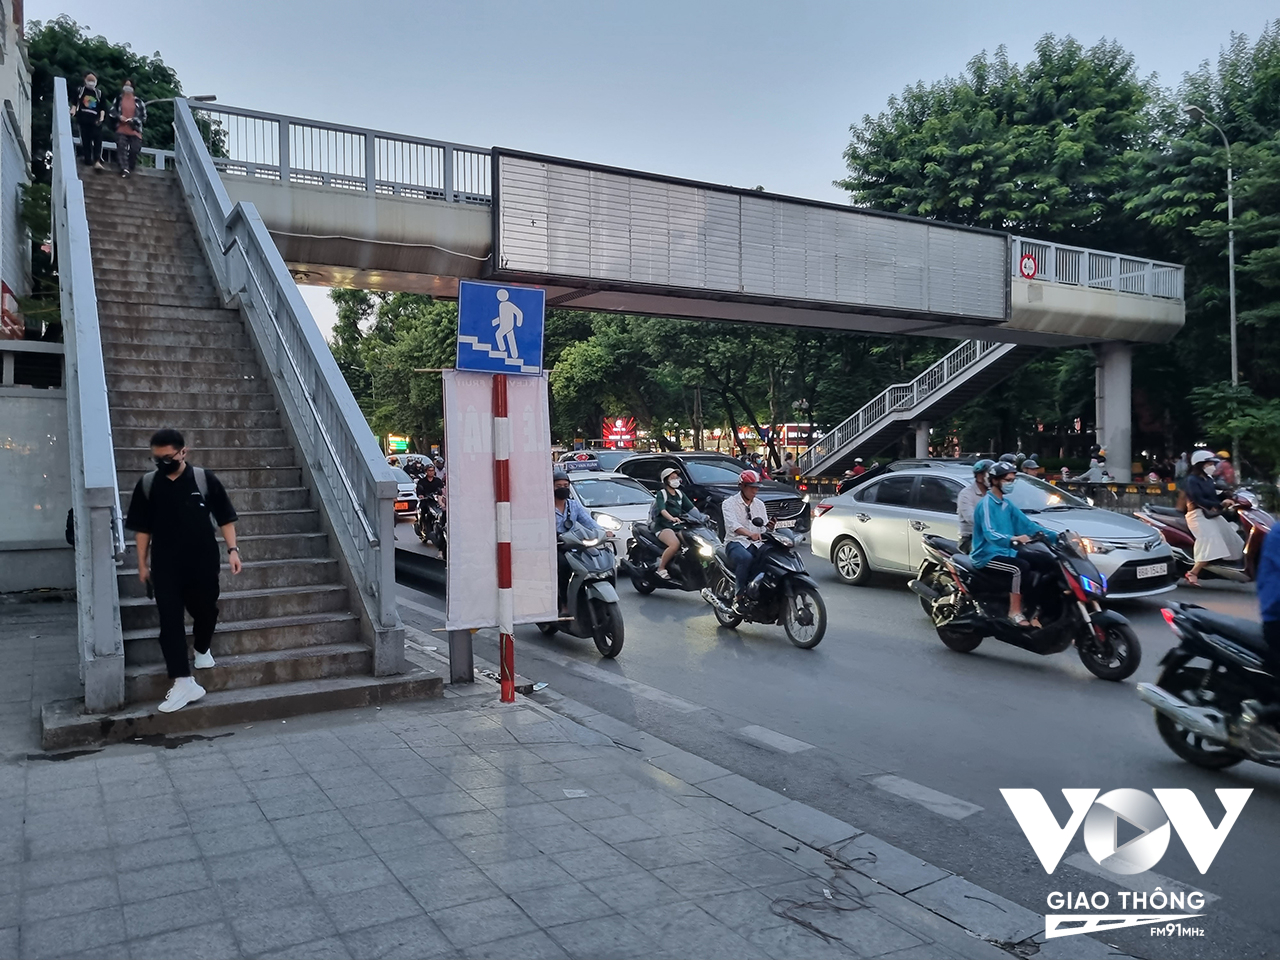 Hàng rào trên dải phân cách và dòng xe đông đúc buộc người đi bộ sử dụng cầu bộ hành, hạn chế tình trạng sang đường tùy tiện. Hình ảnh ghi nhận trên phố Tây Sơn.